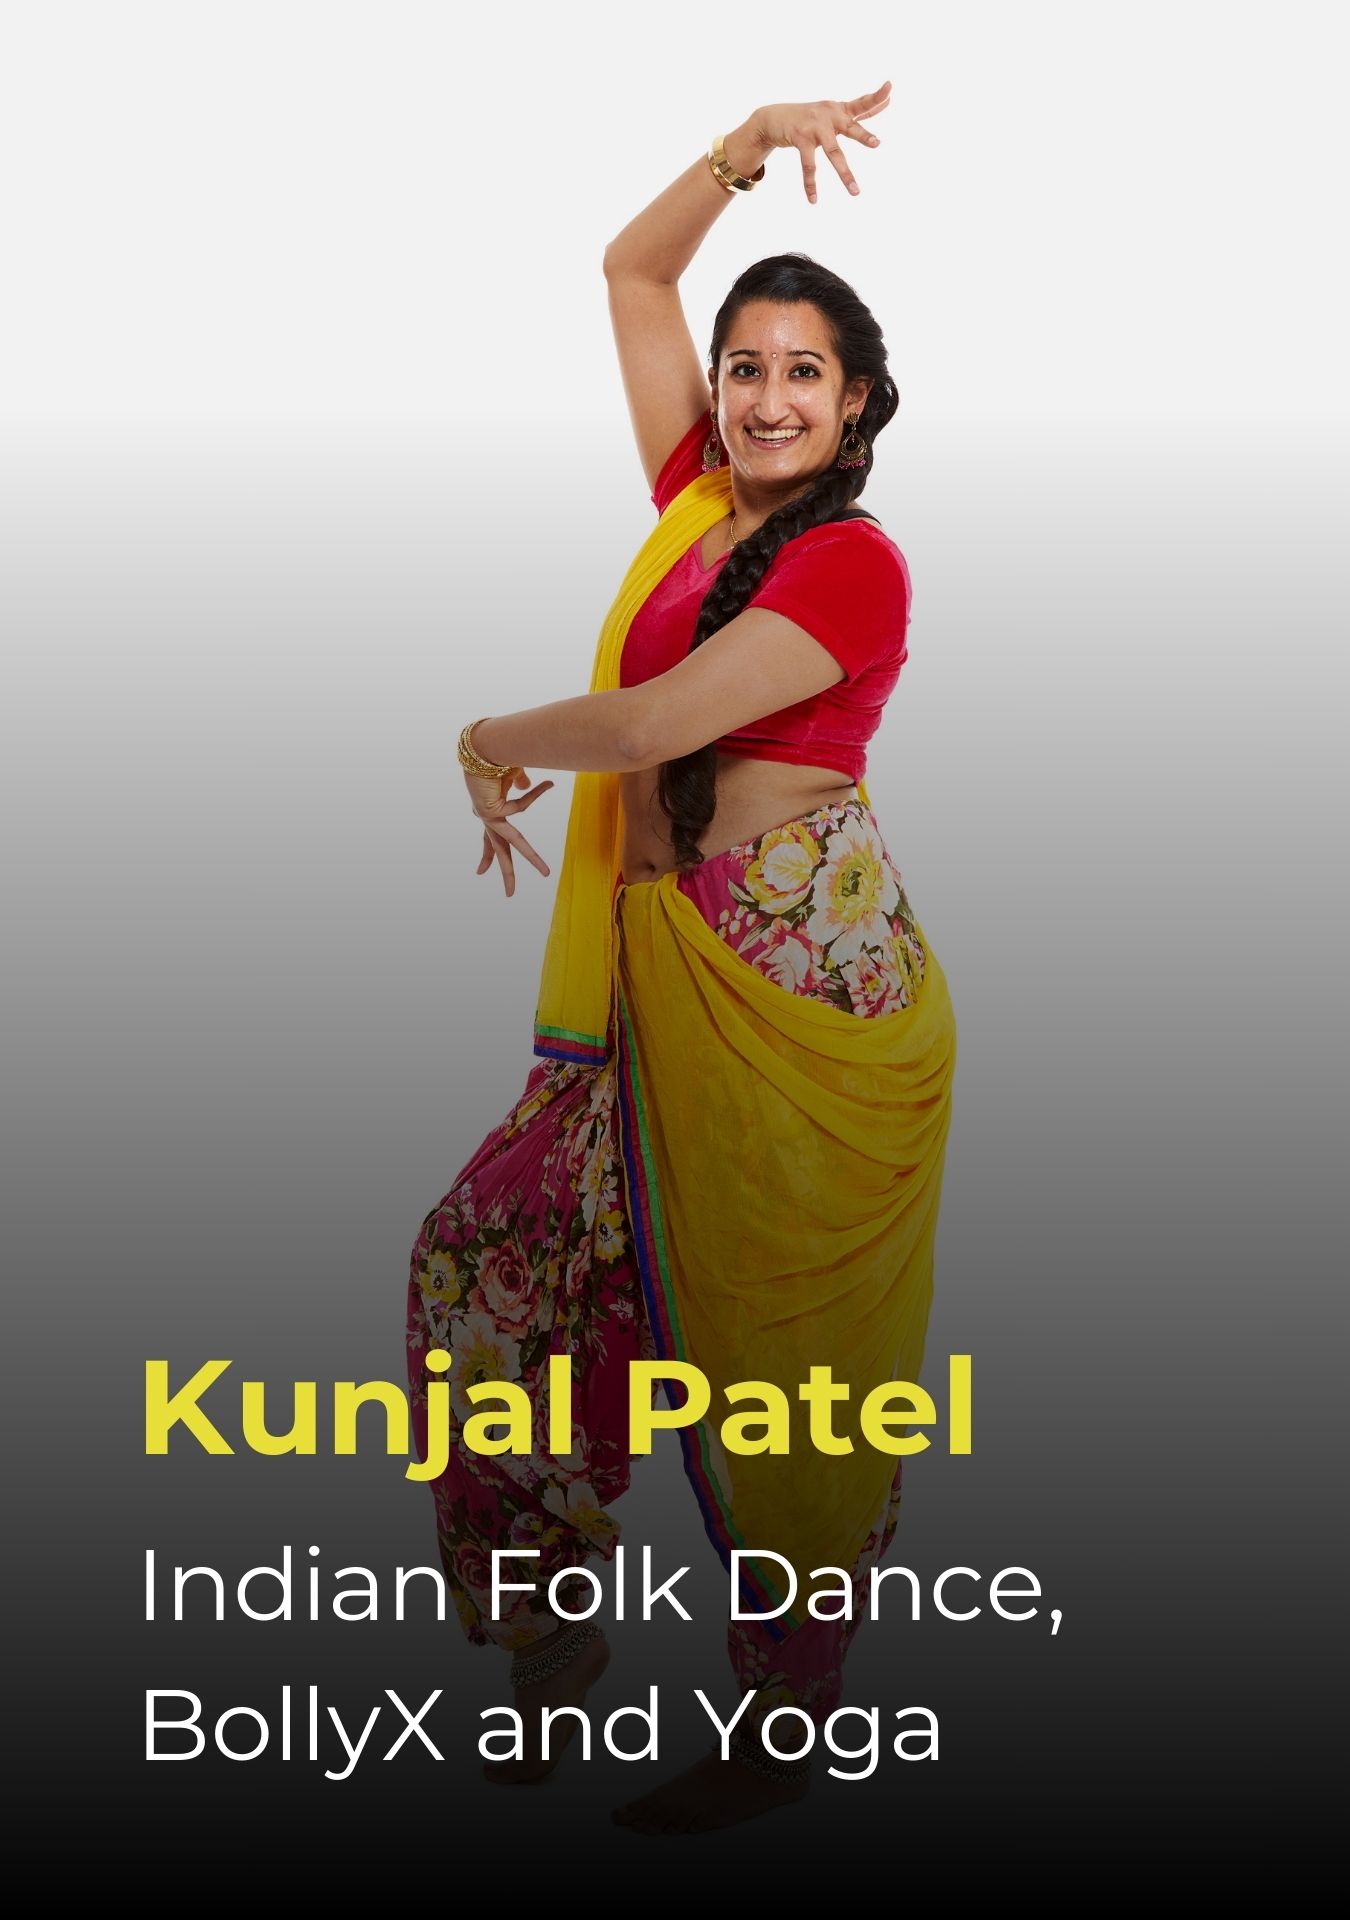 Kunjal Patel